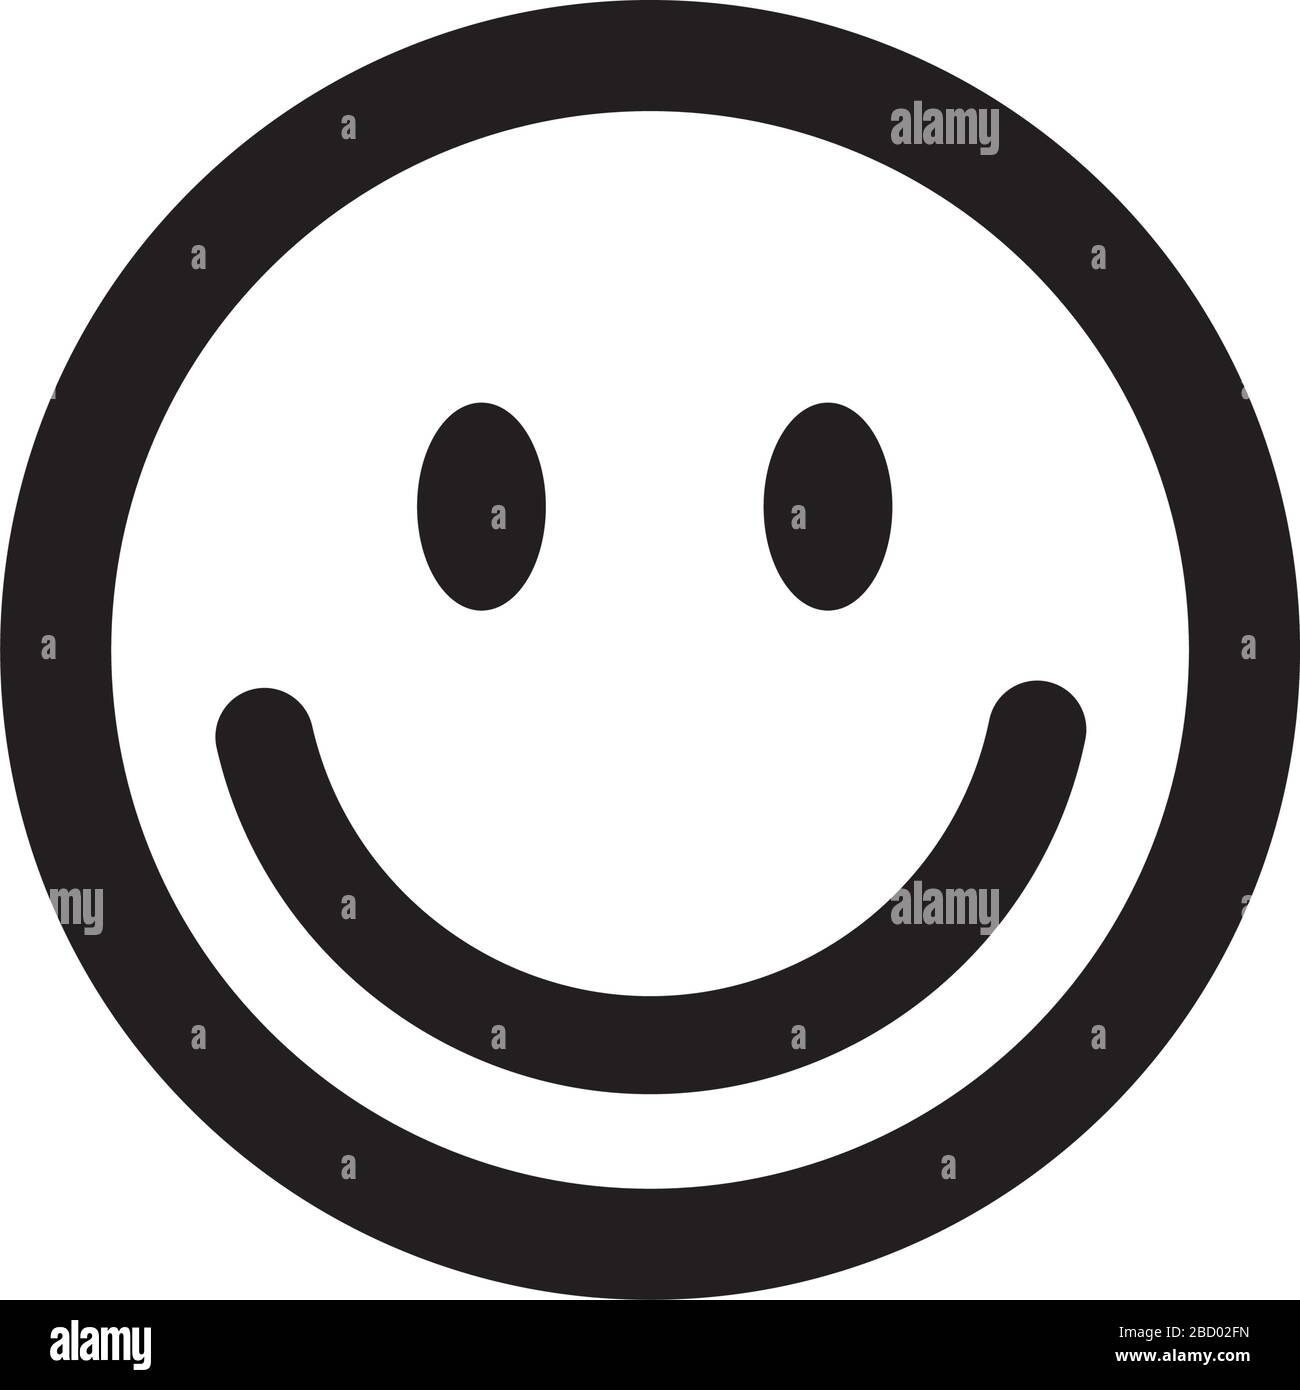 smile face icon Stock Vector